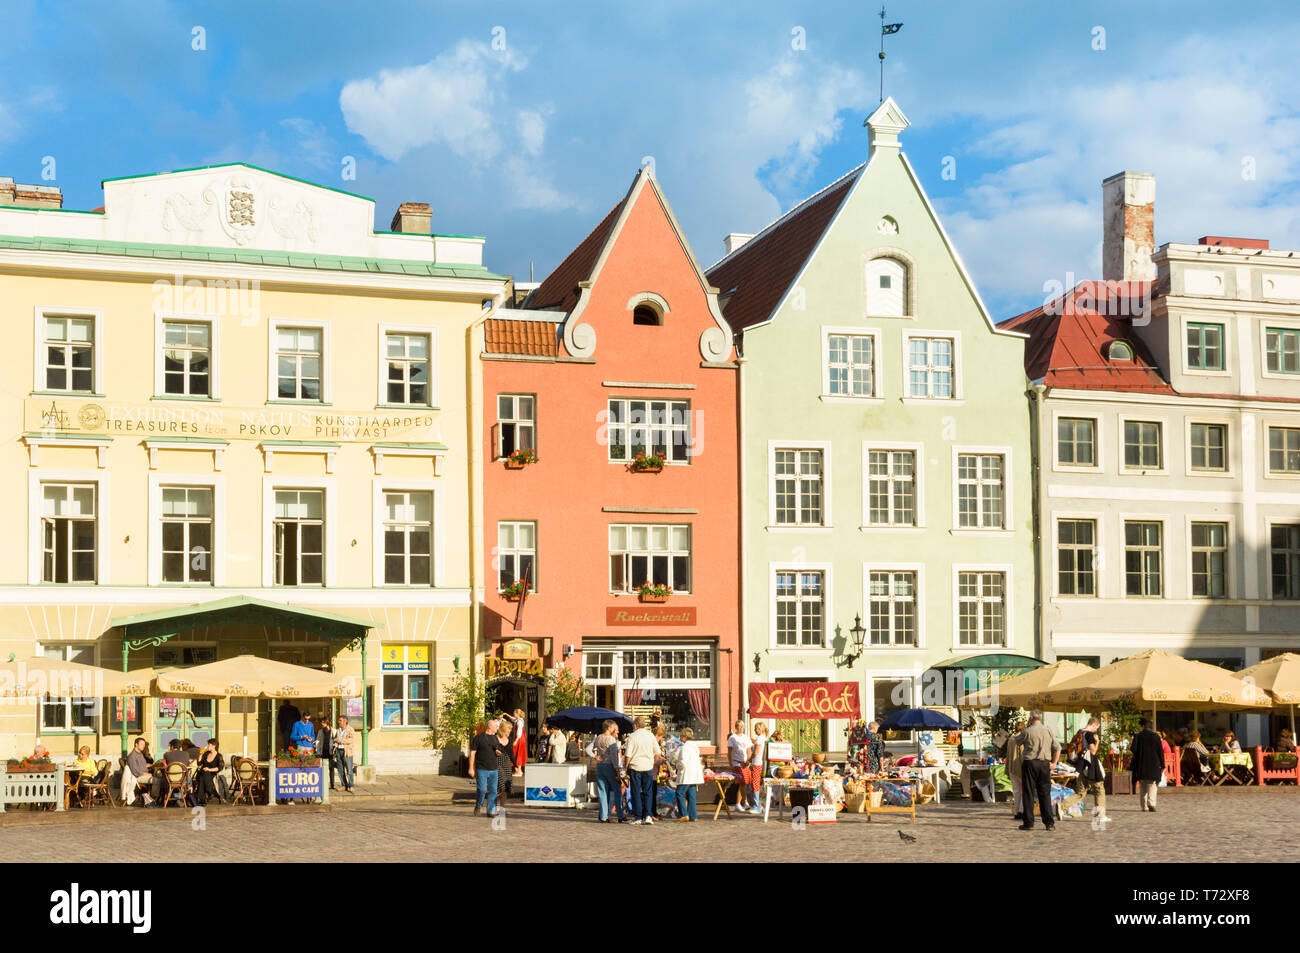 Menschen in Cafés mit Sonnenschirmen in der mittelalterlichen gepflasterten Marktplatz der Altstadt Raekoja Plats Tallinn Estland Baltikum Stockfoto